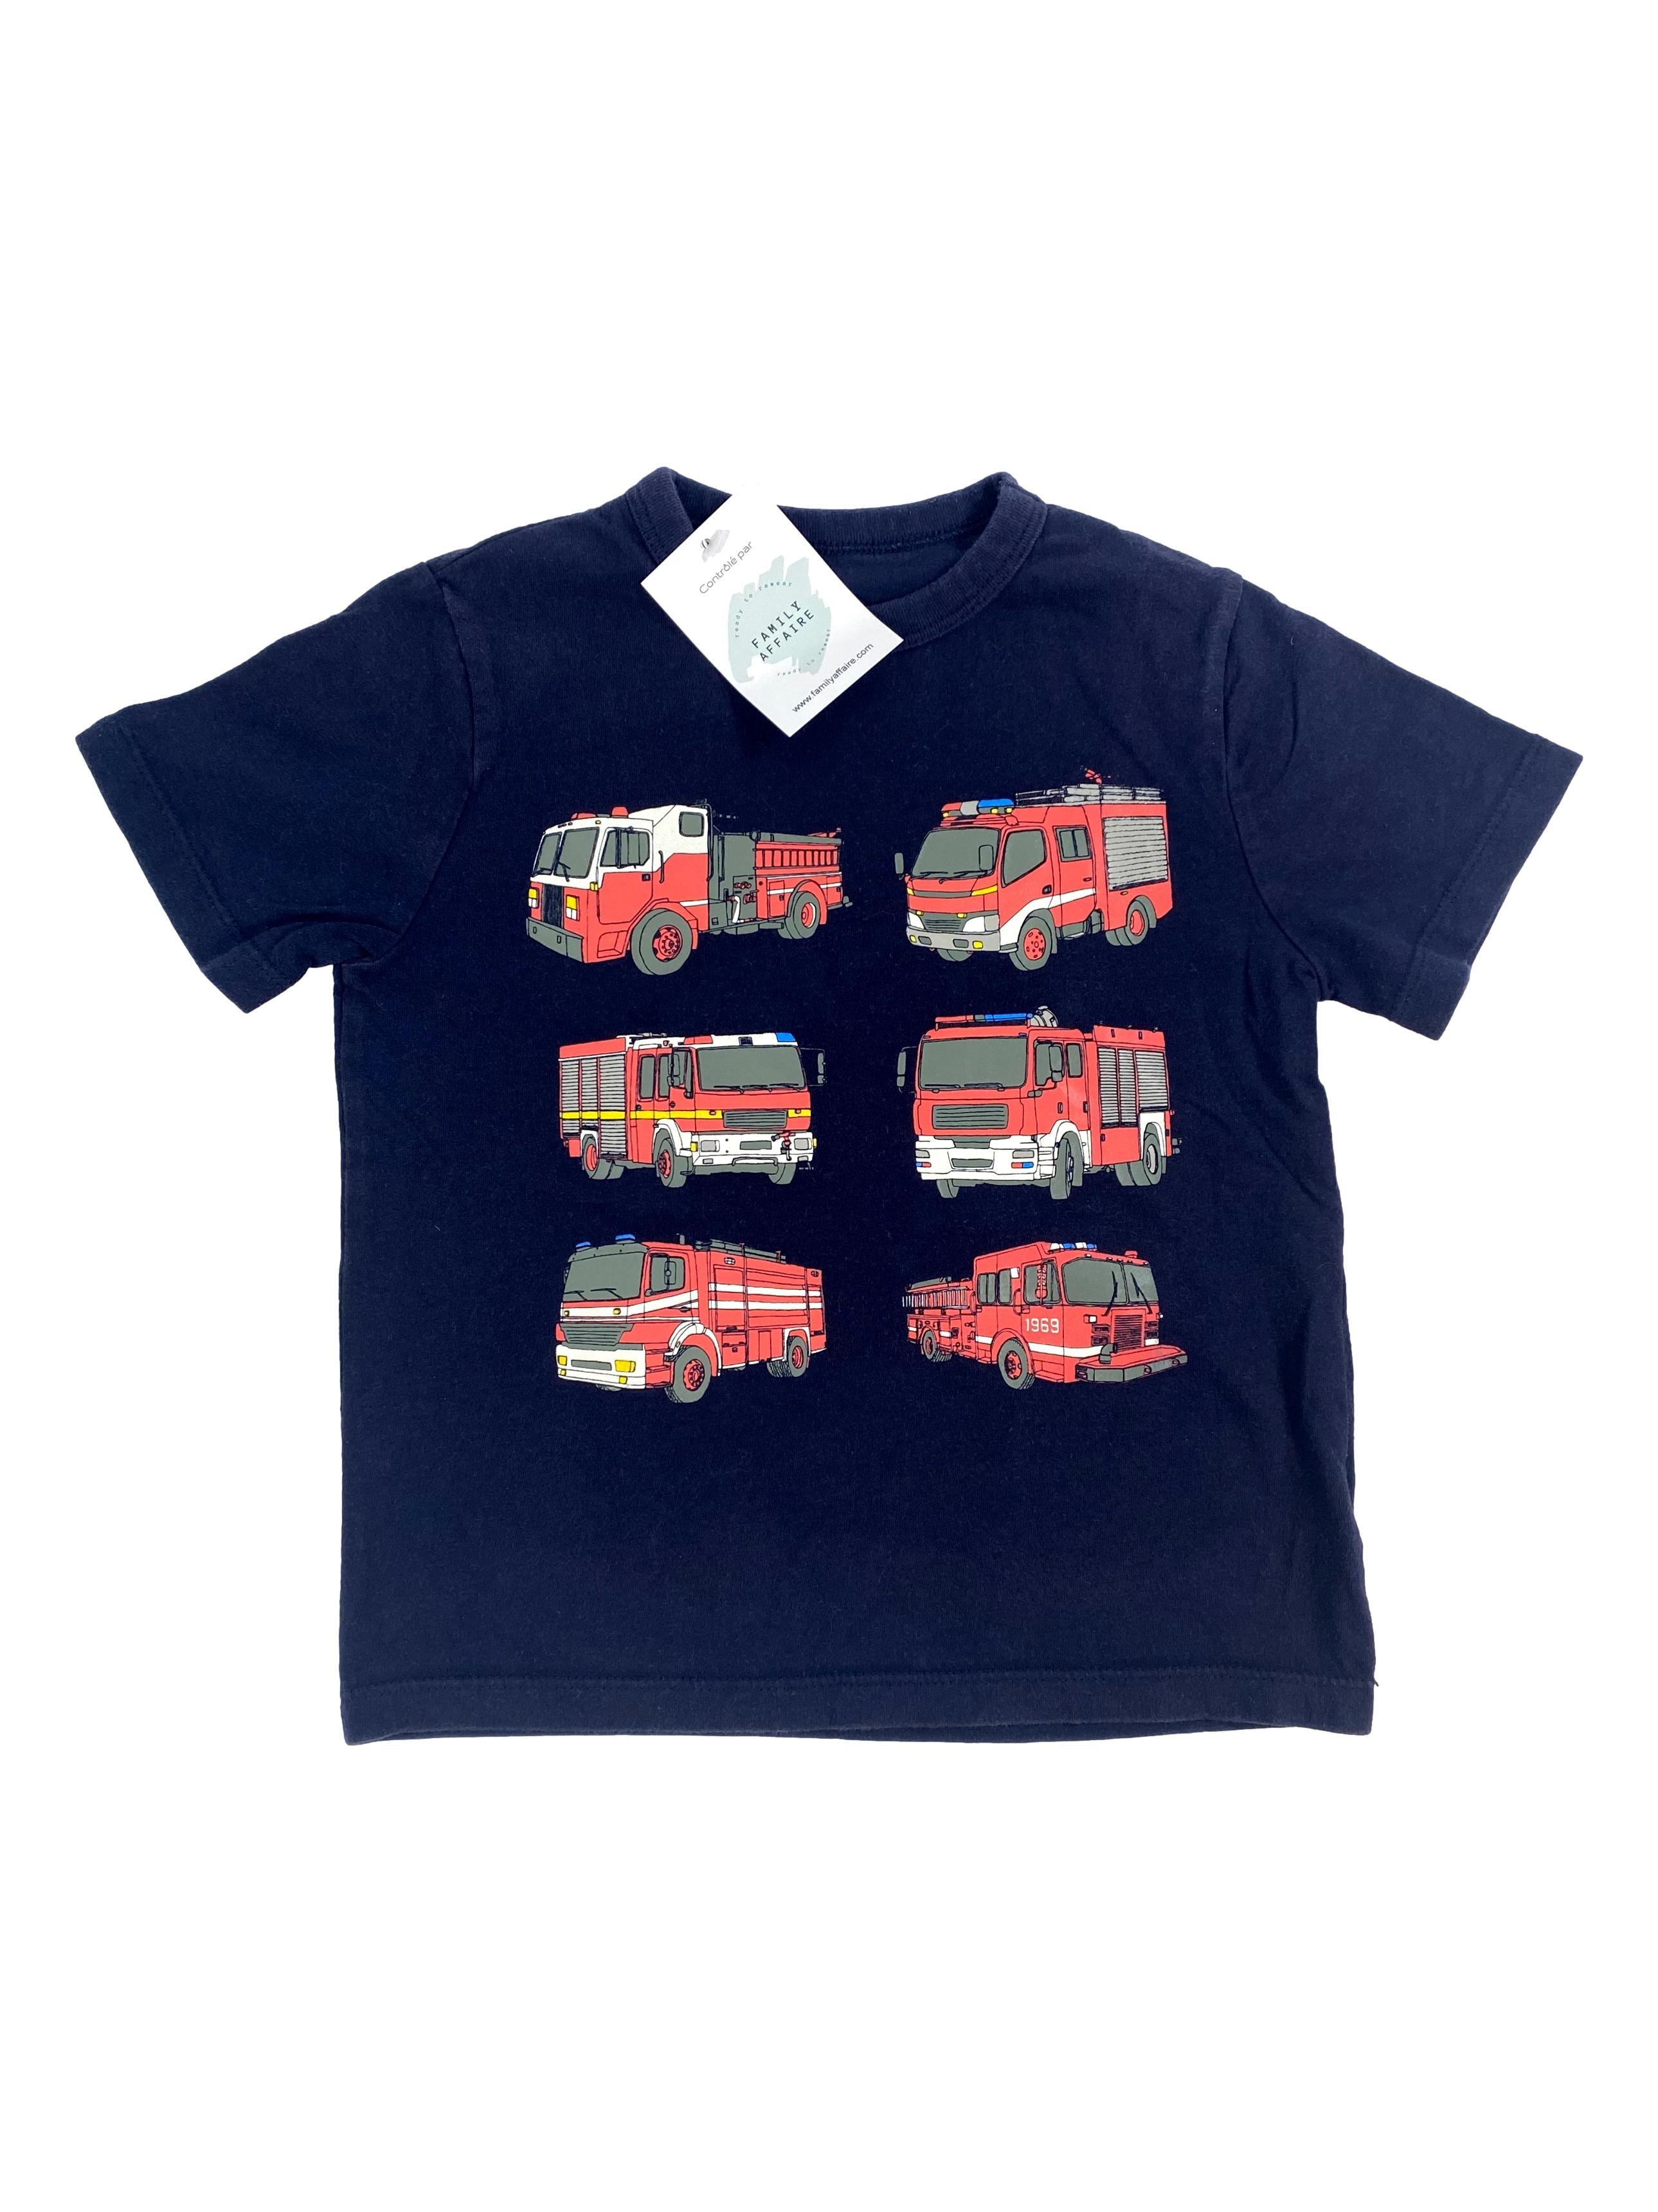 Tee-shirts Cadeau pompier - Livraison Gratuite